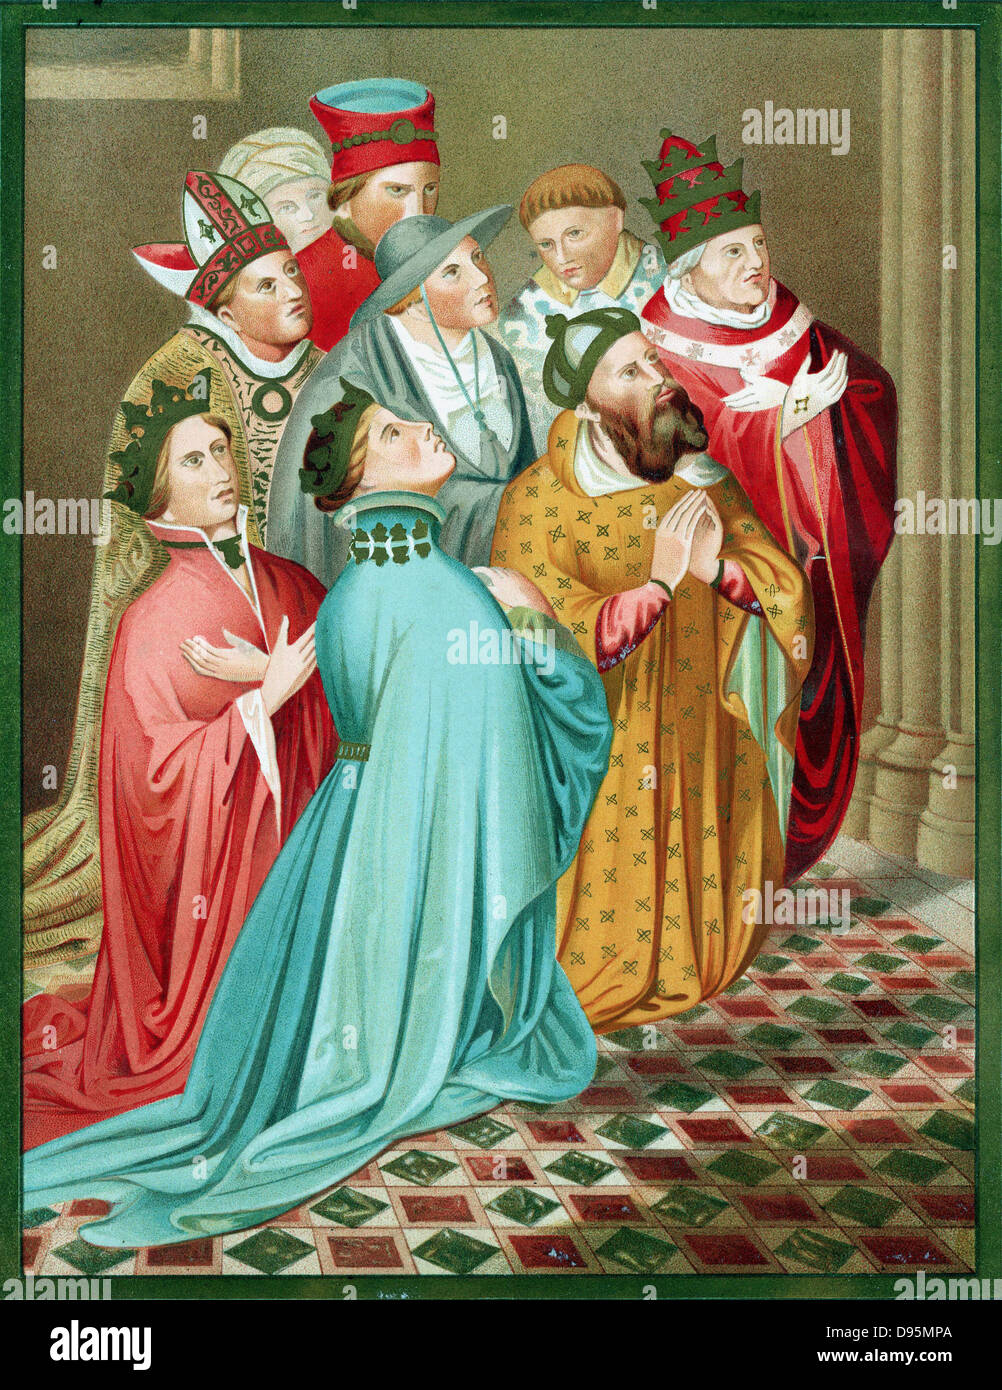 Ferdinand I d'Aragon et la reine, avec Sigismond (1368-1437) Le Saint Empereur romain à partir de 1433 et le Pape Martin V (1368-1431) au moment de concile de Constance 1417. Chromolithographie après 'Carderera Iconografia Espanola' Banque D'Images